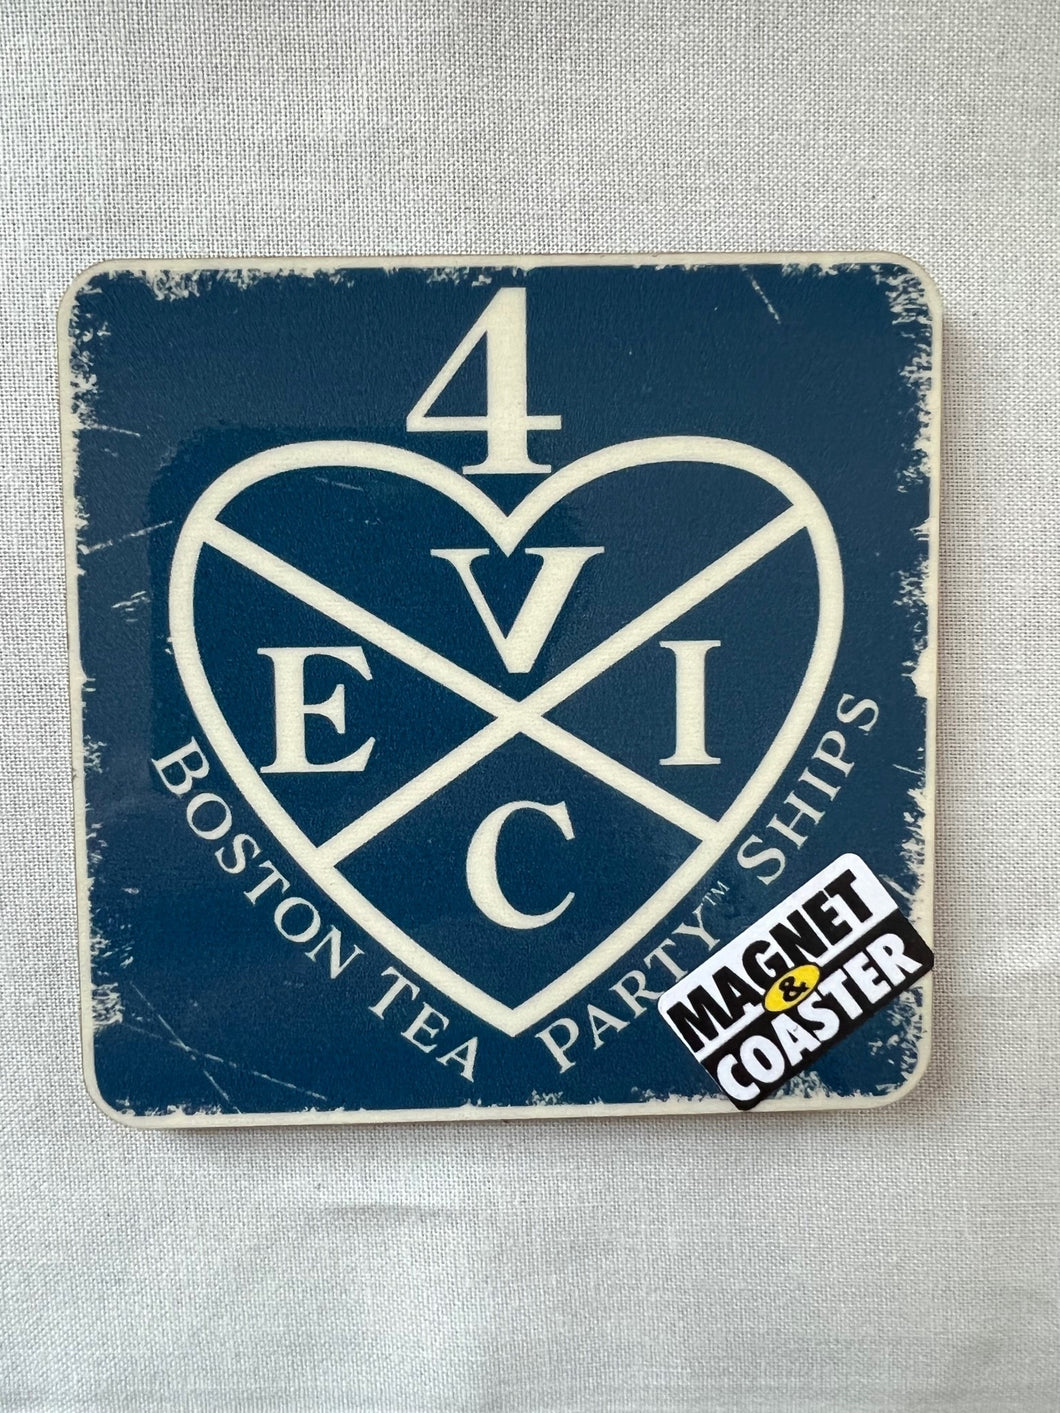 East India Company Coaster Magnet